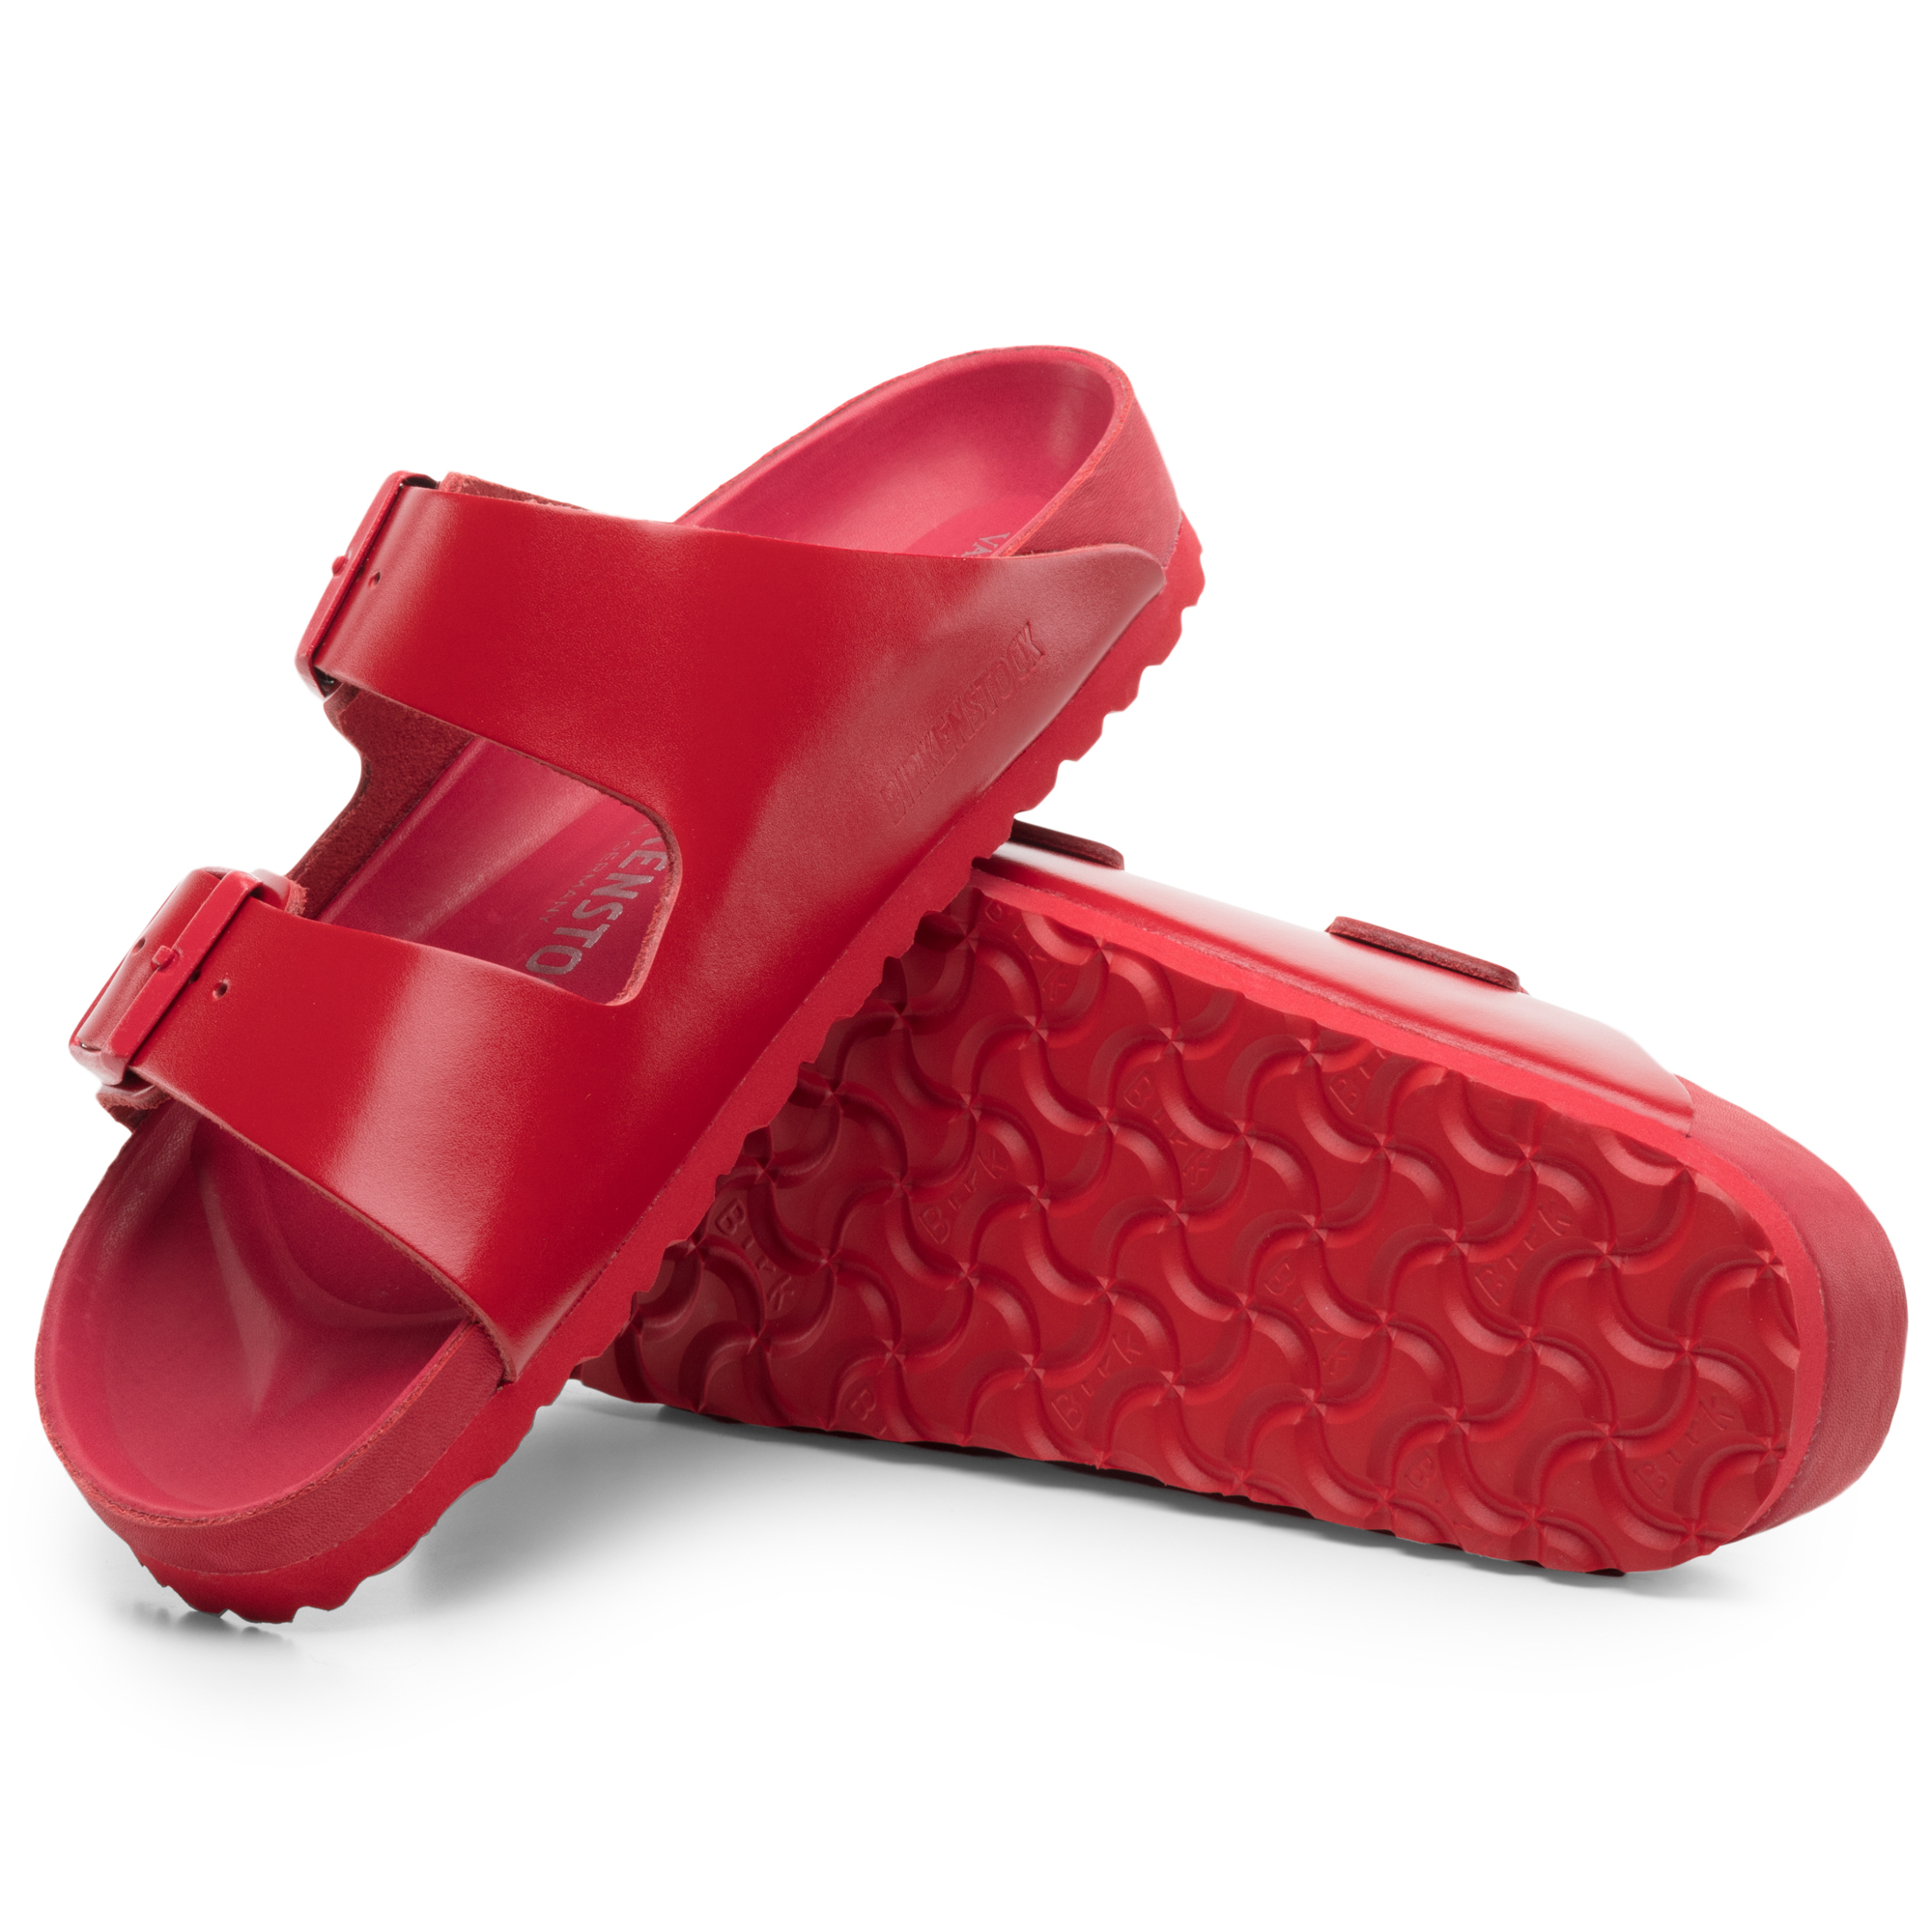 birkenstock red sole